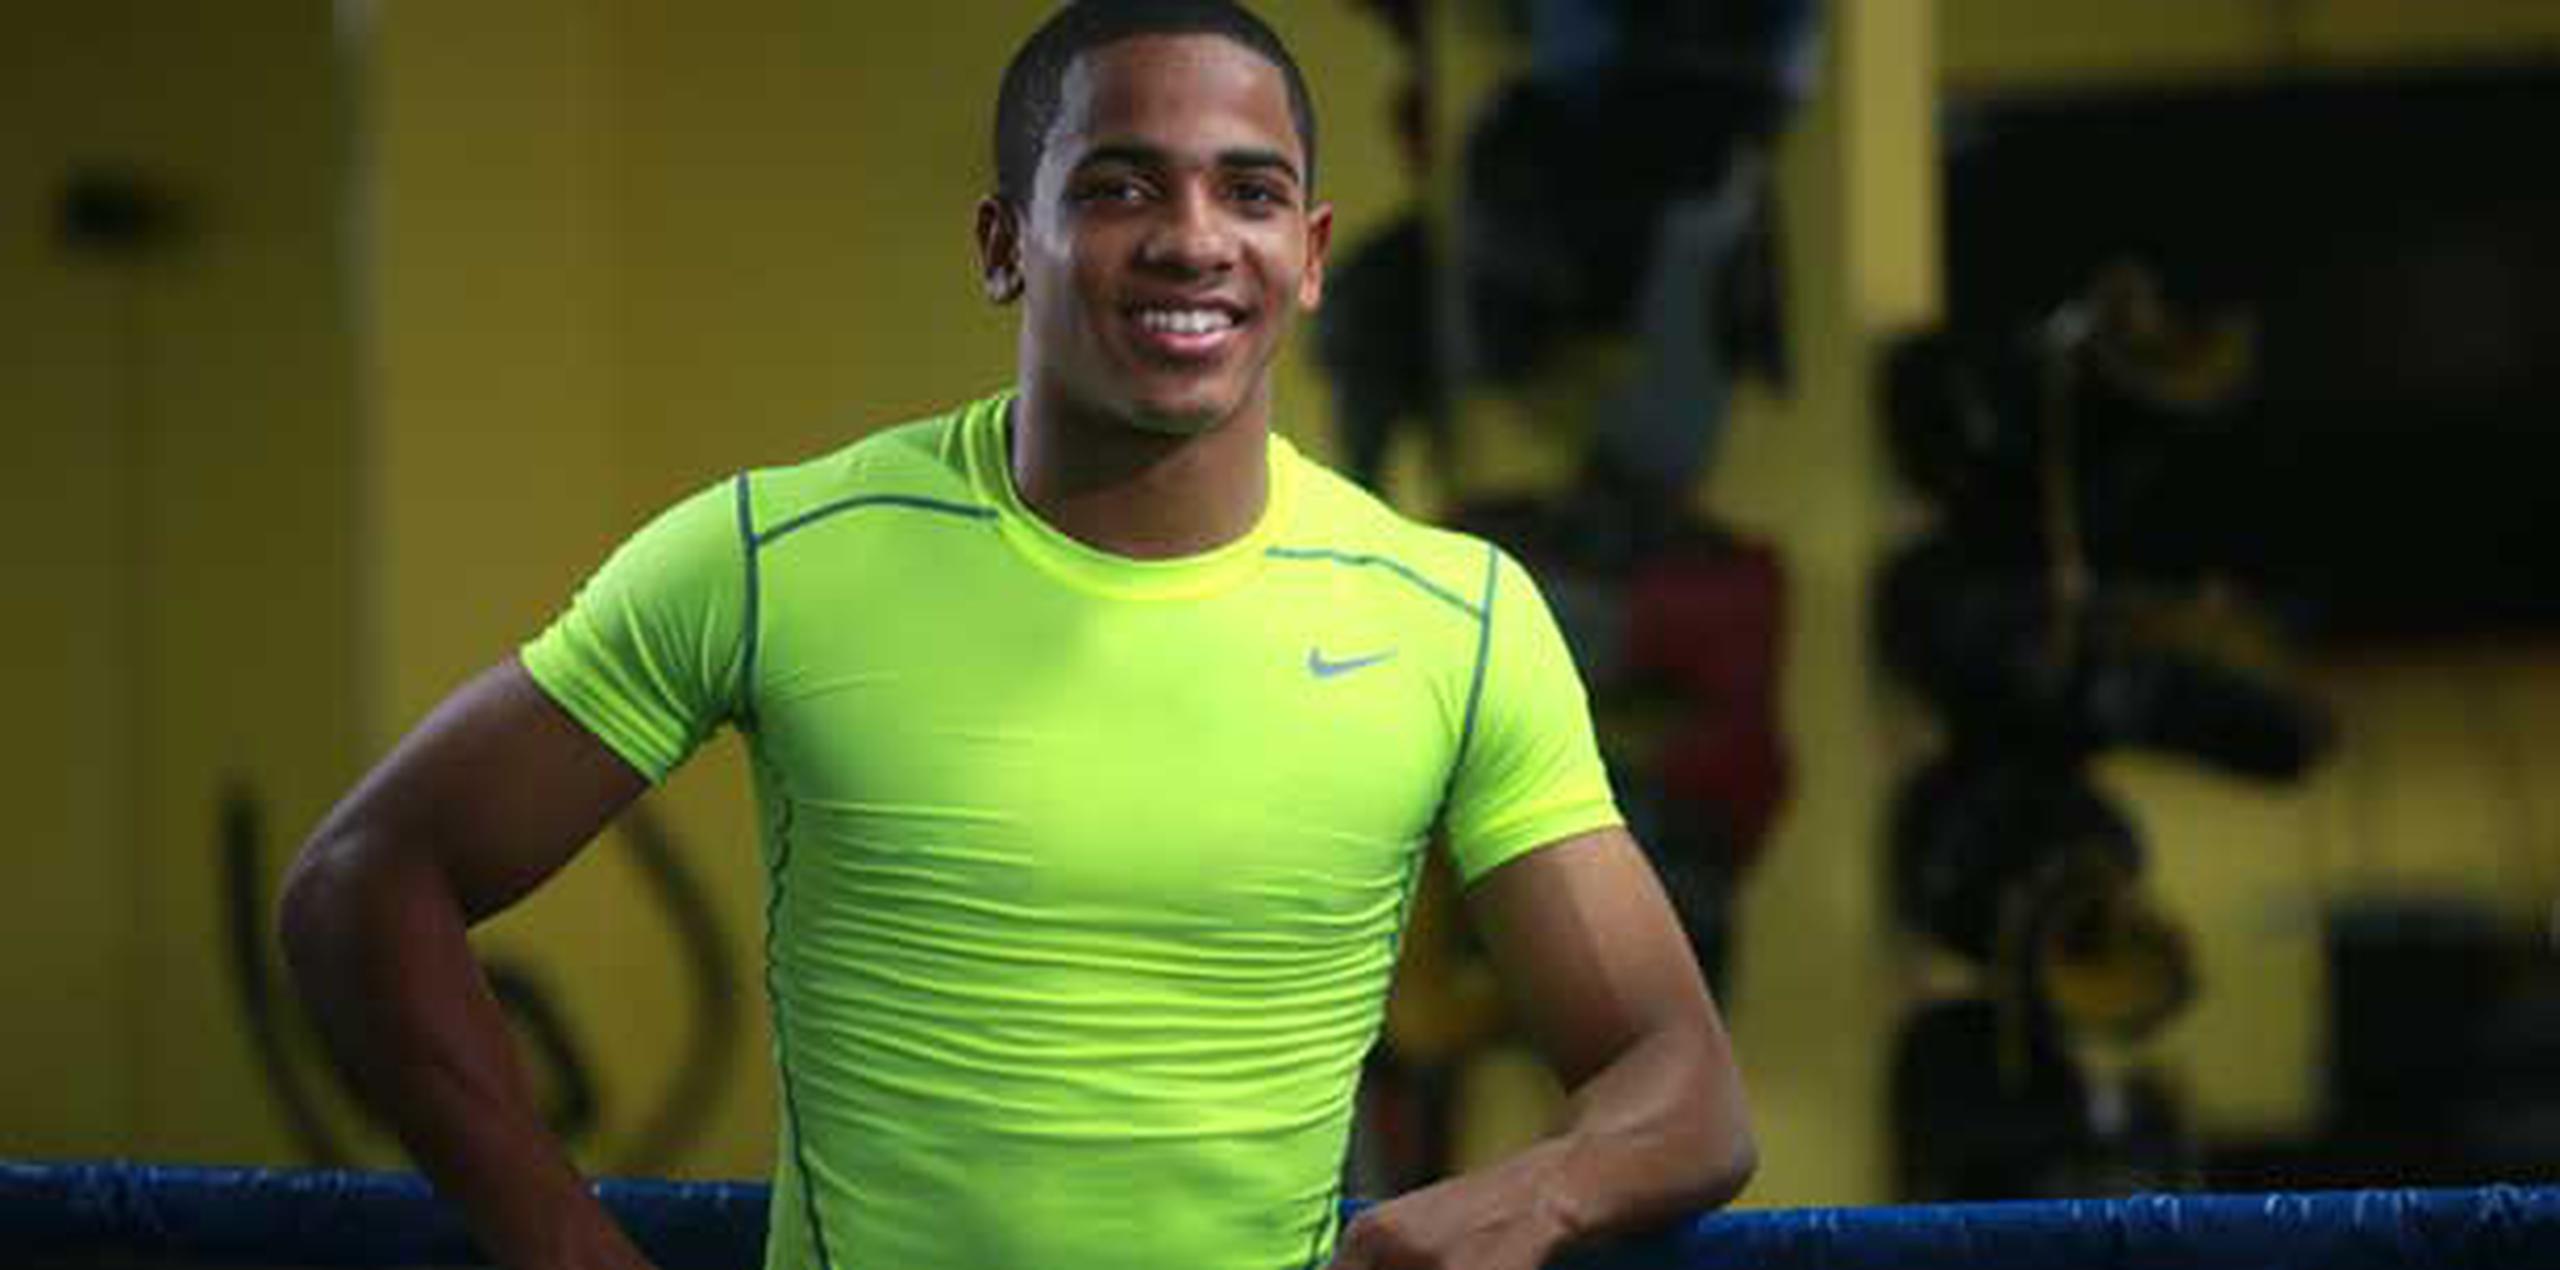 Verdejo se ha esmerado en seguir desarrollando sus talentos para, algún día, unirse a la extensa lista de boxeadores puertorriqueños que han sido campeones mundiales.  (angel.rivera@gfrmedia.com)